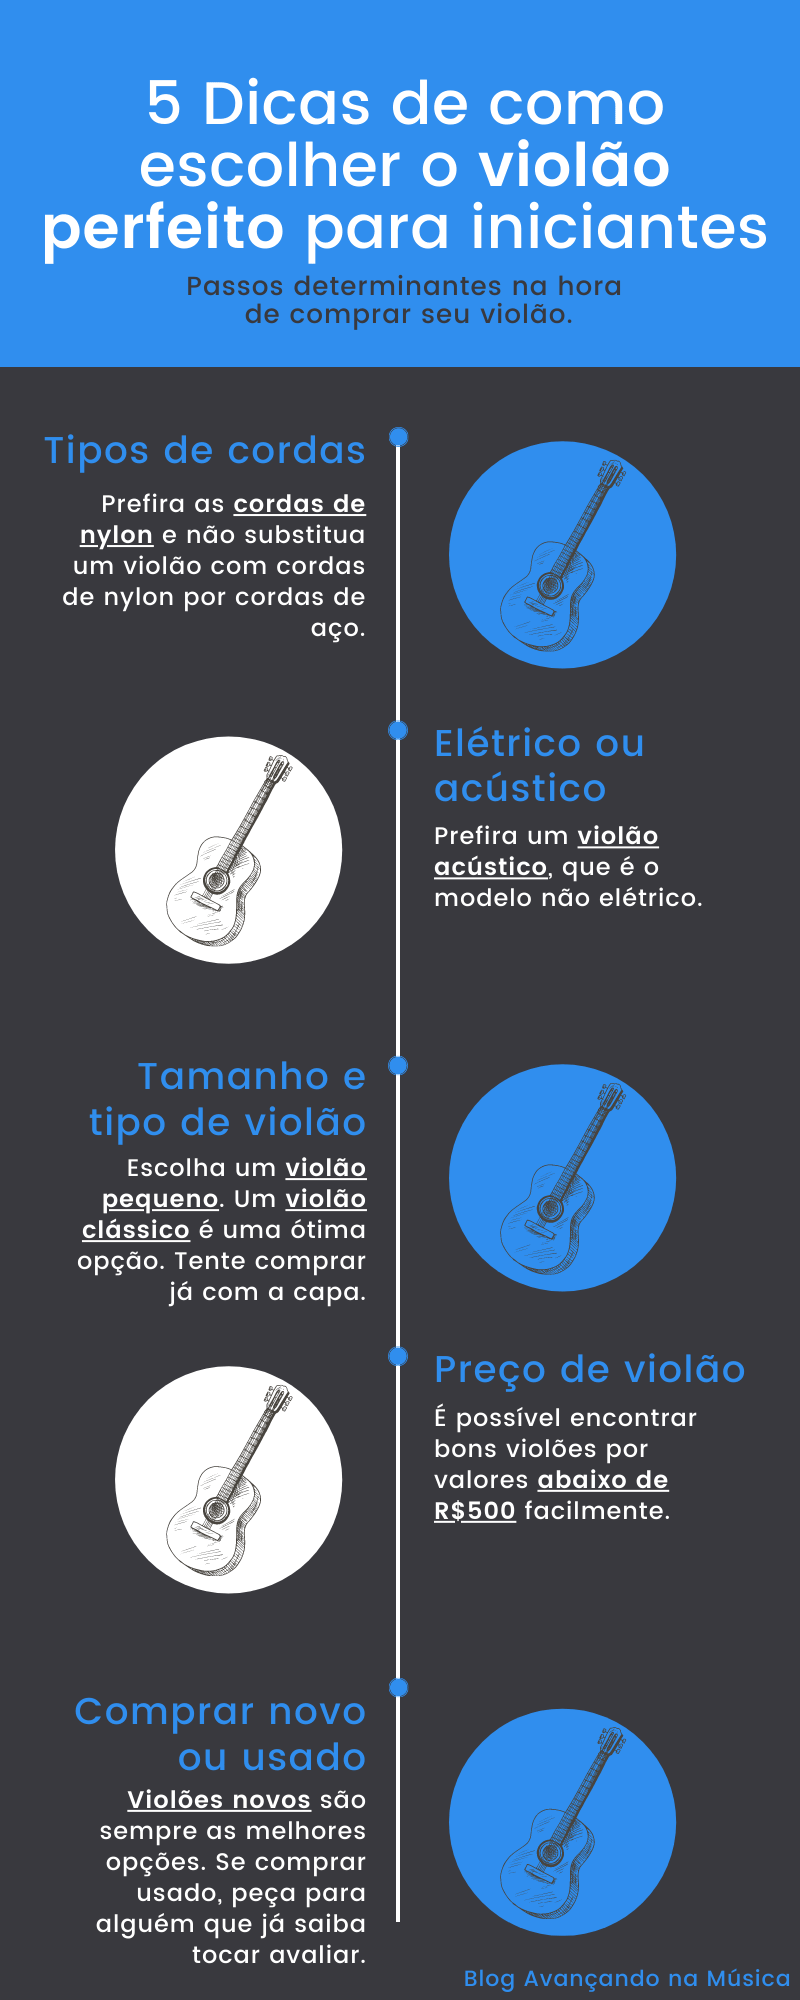 Infográfico 5 dicas de como comprar violão para iniciantes